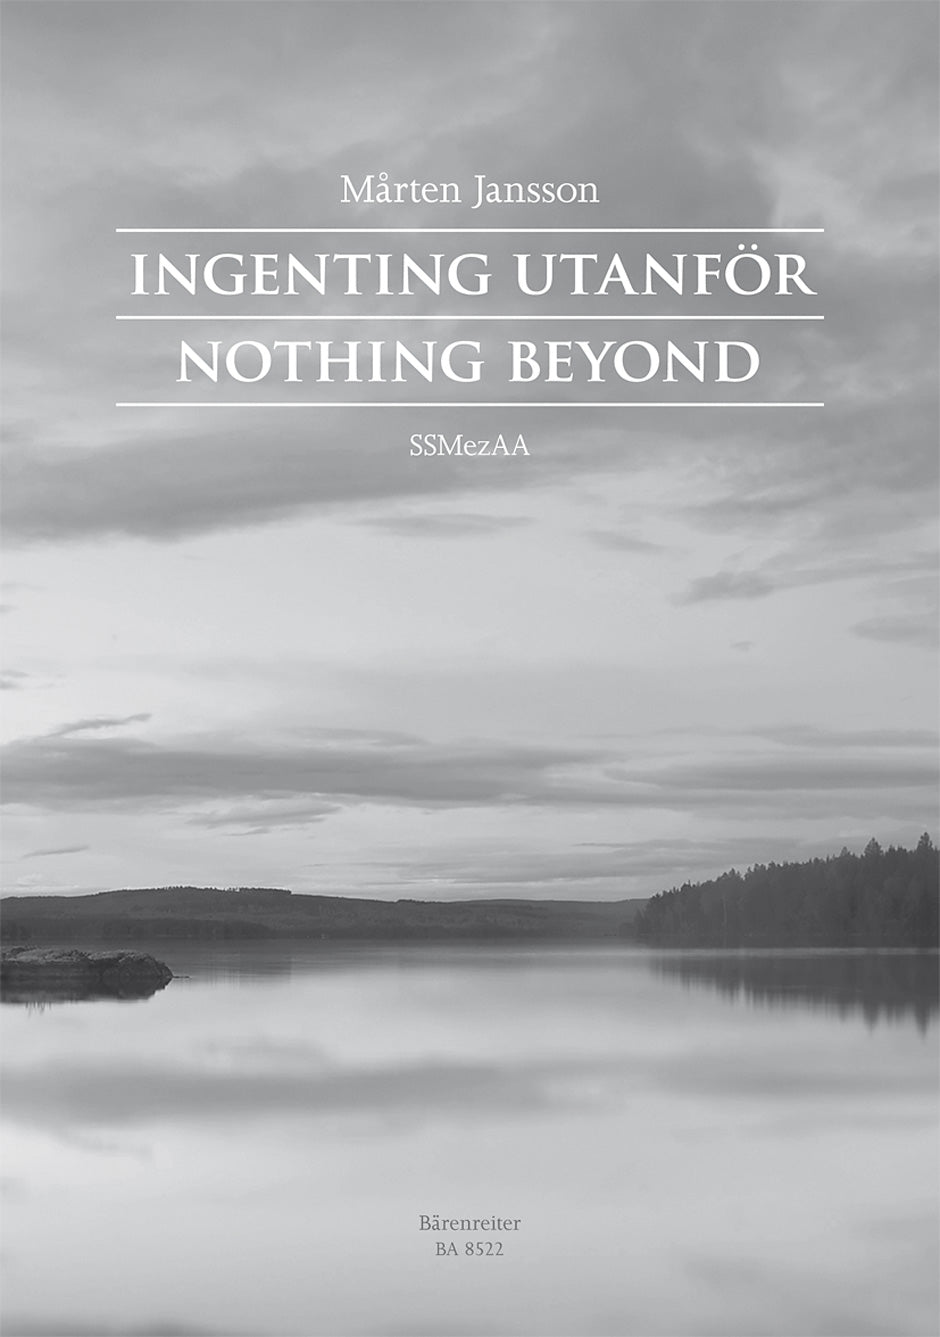 Jansson Ingenting Utanför (Nothing beyond)